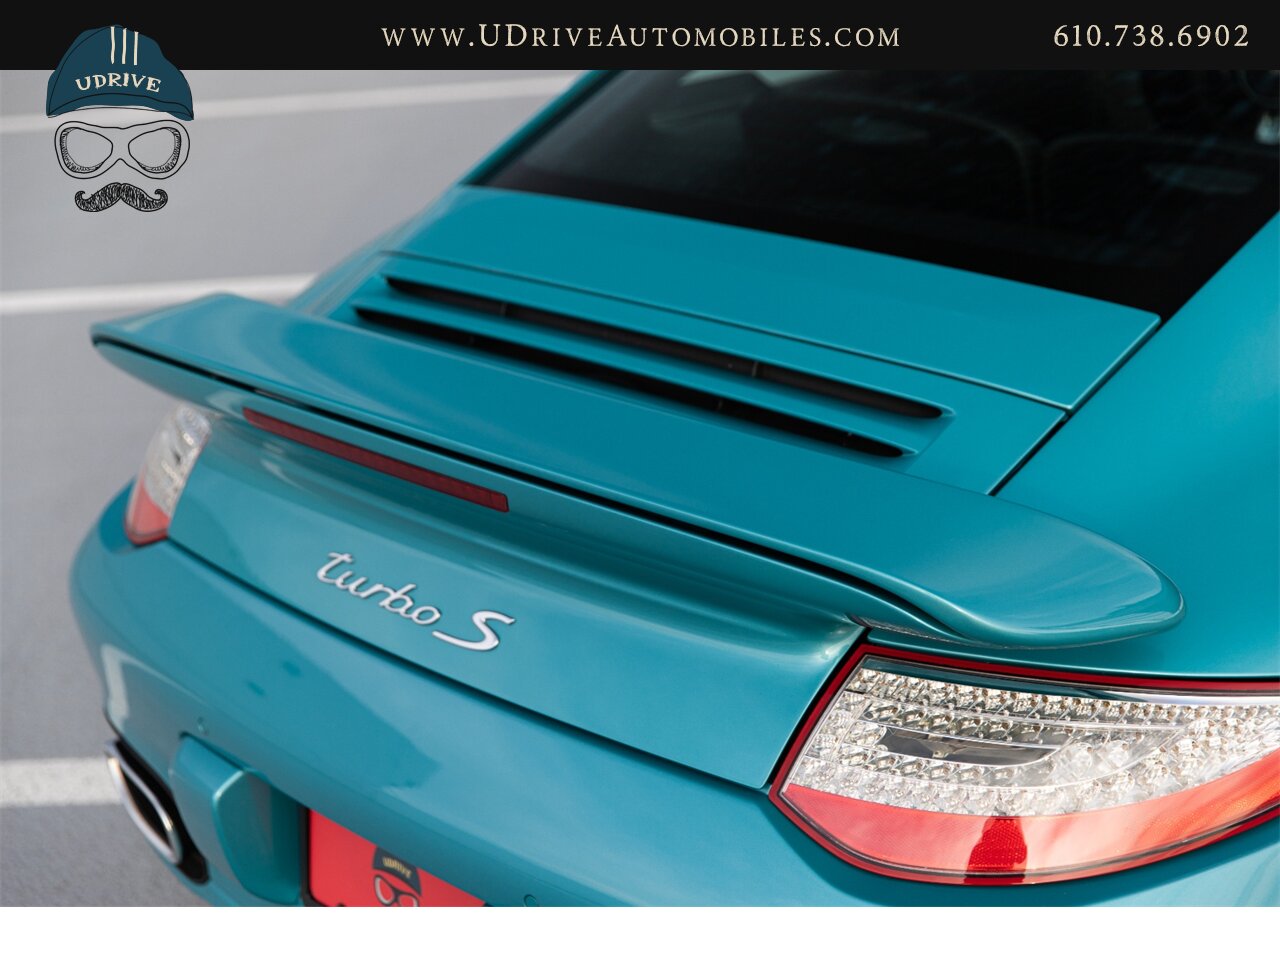 2012 Porsche 911 Turbo S 997.2 RARE Ipanema Blue 13k Miles  Vent Sts Carbon Fiber Pntd Exter Pkg Blk Centerlock Whls $173k MSRP - Photo 18 - West Chester, PA 19382